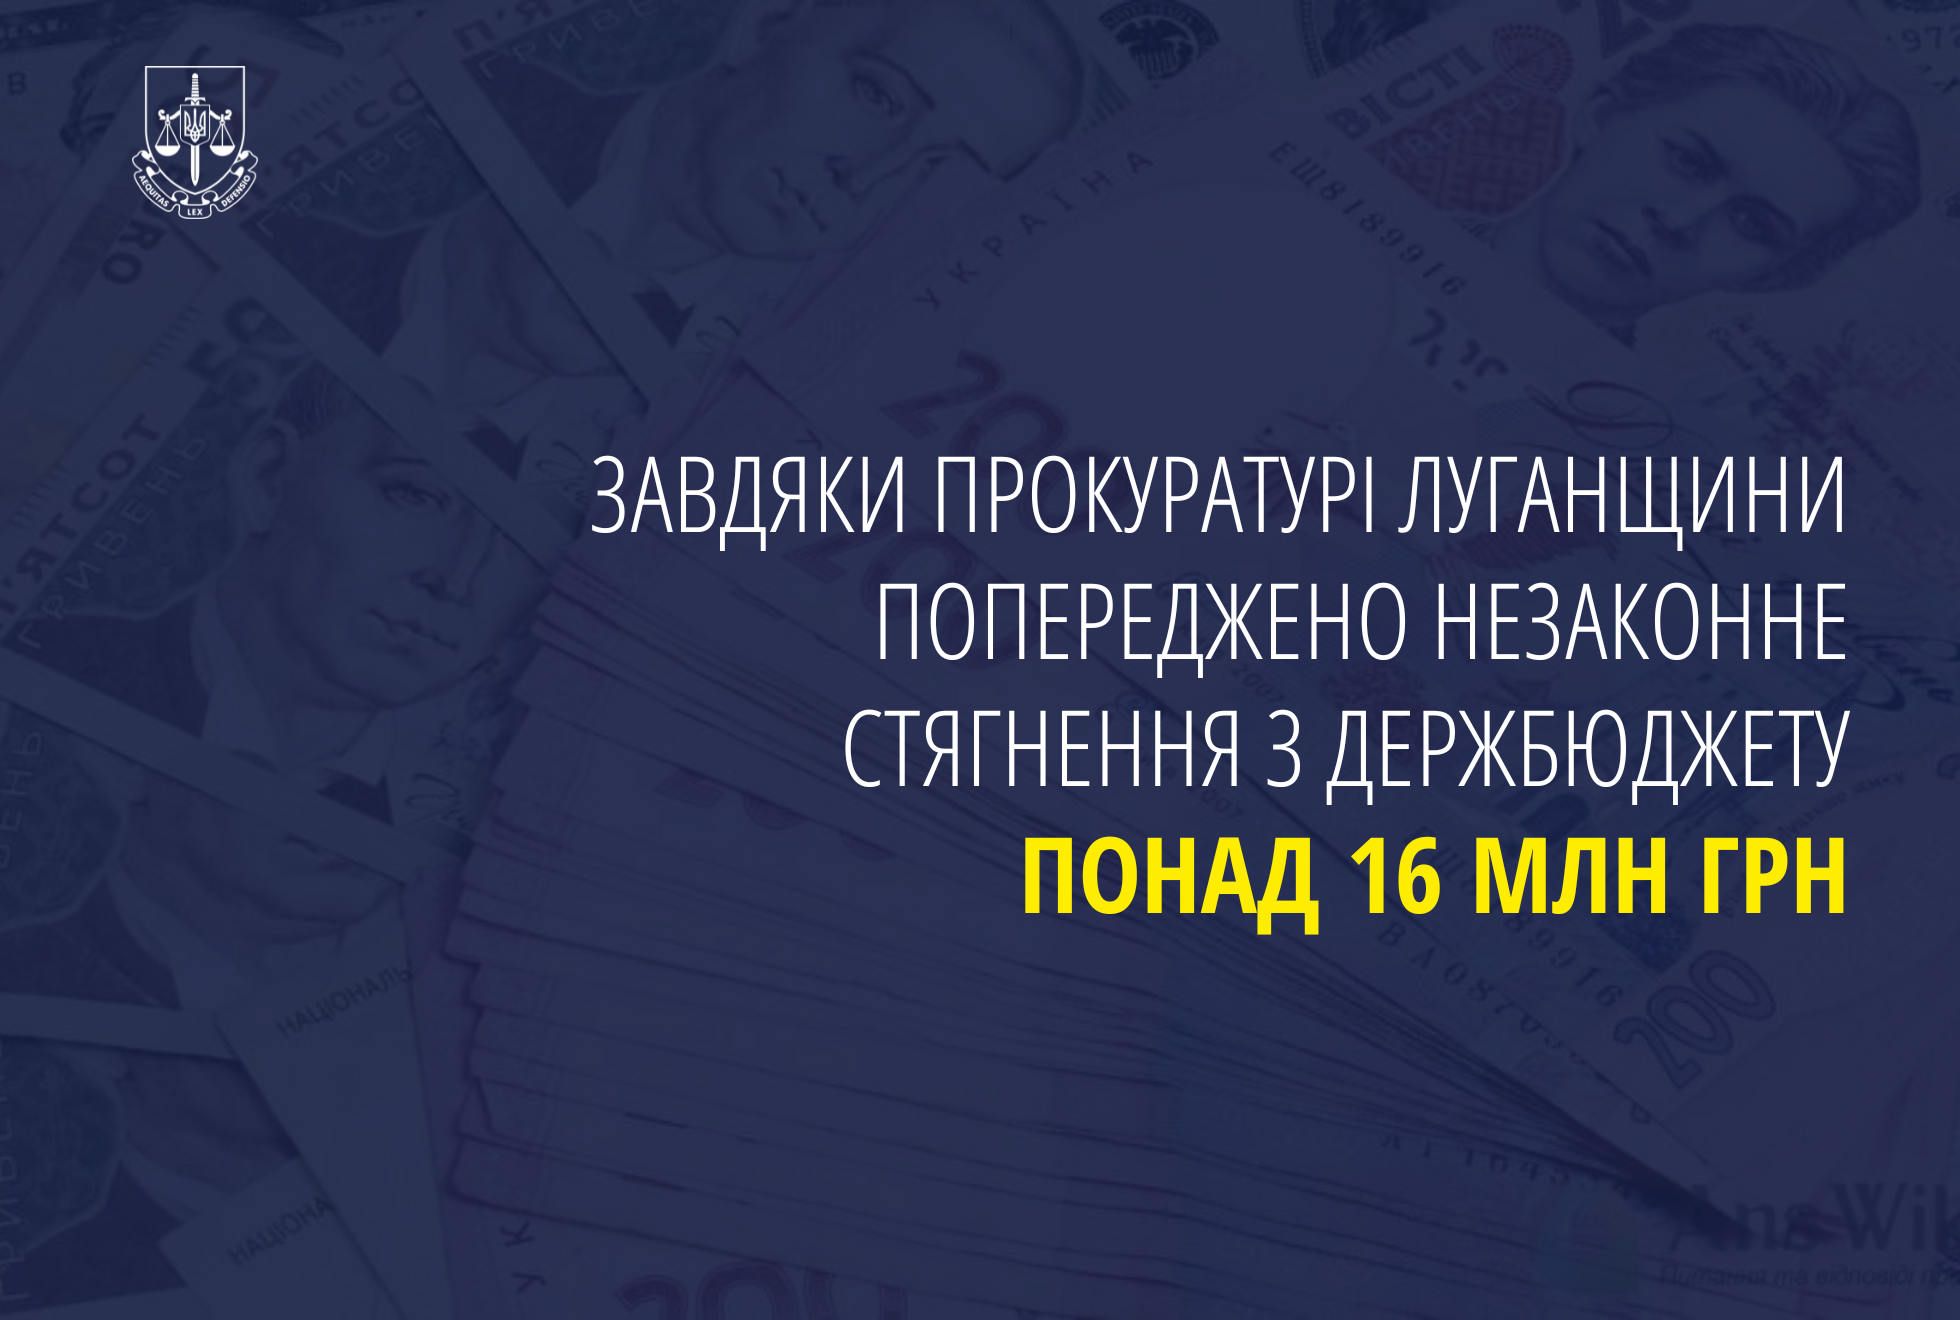 Завдяки прокуратурі Луганщини попереджено незаконне стягнення з держбюджету понад 16 млн грн